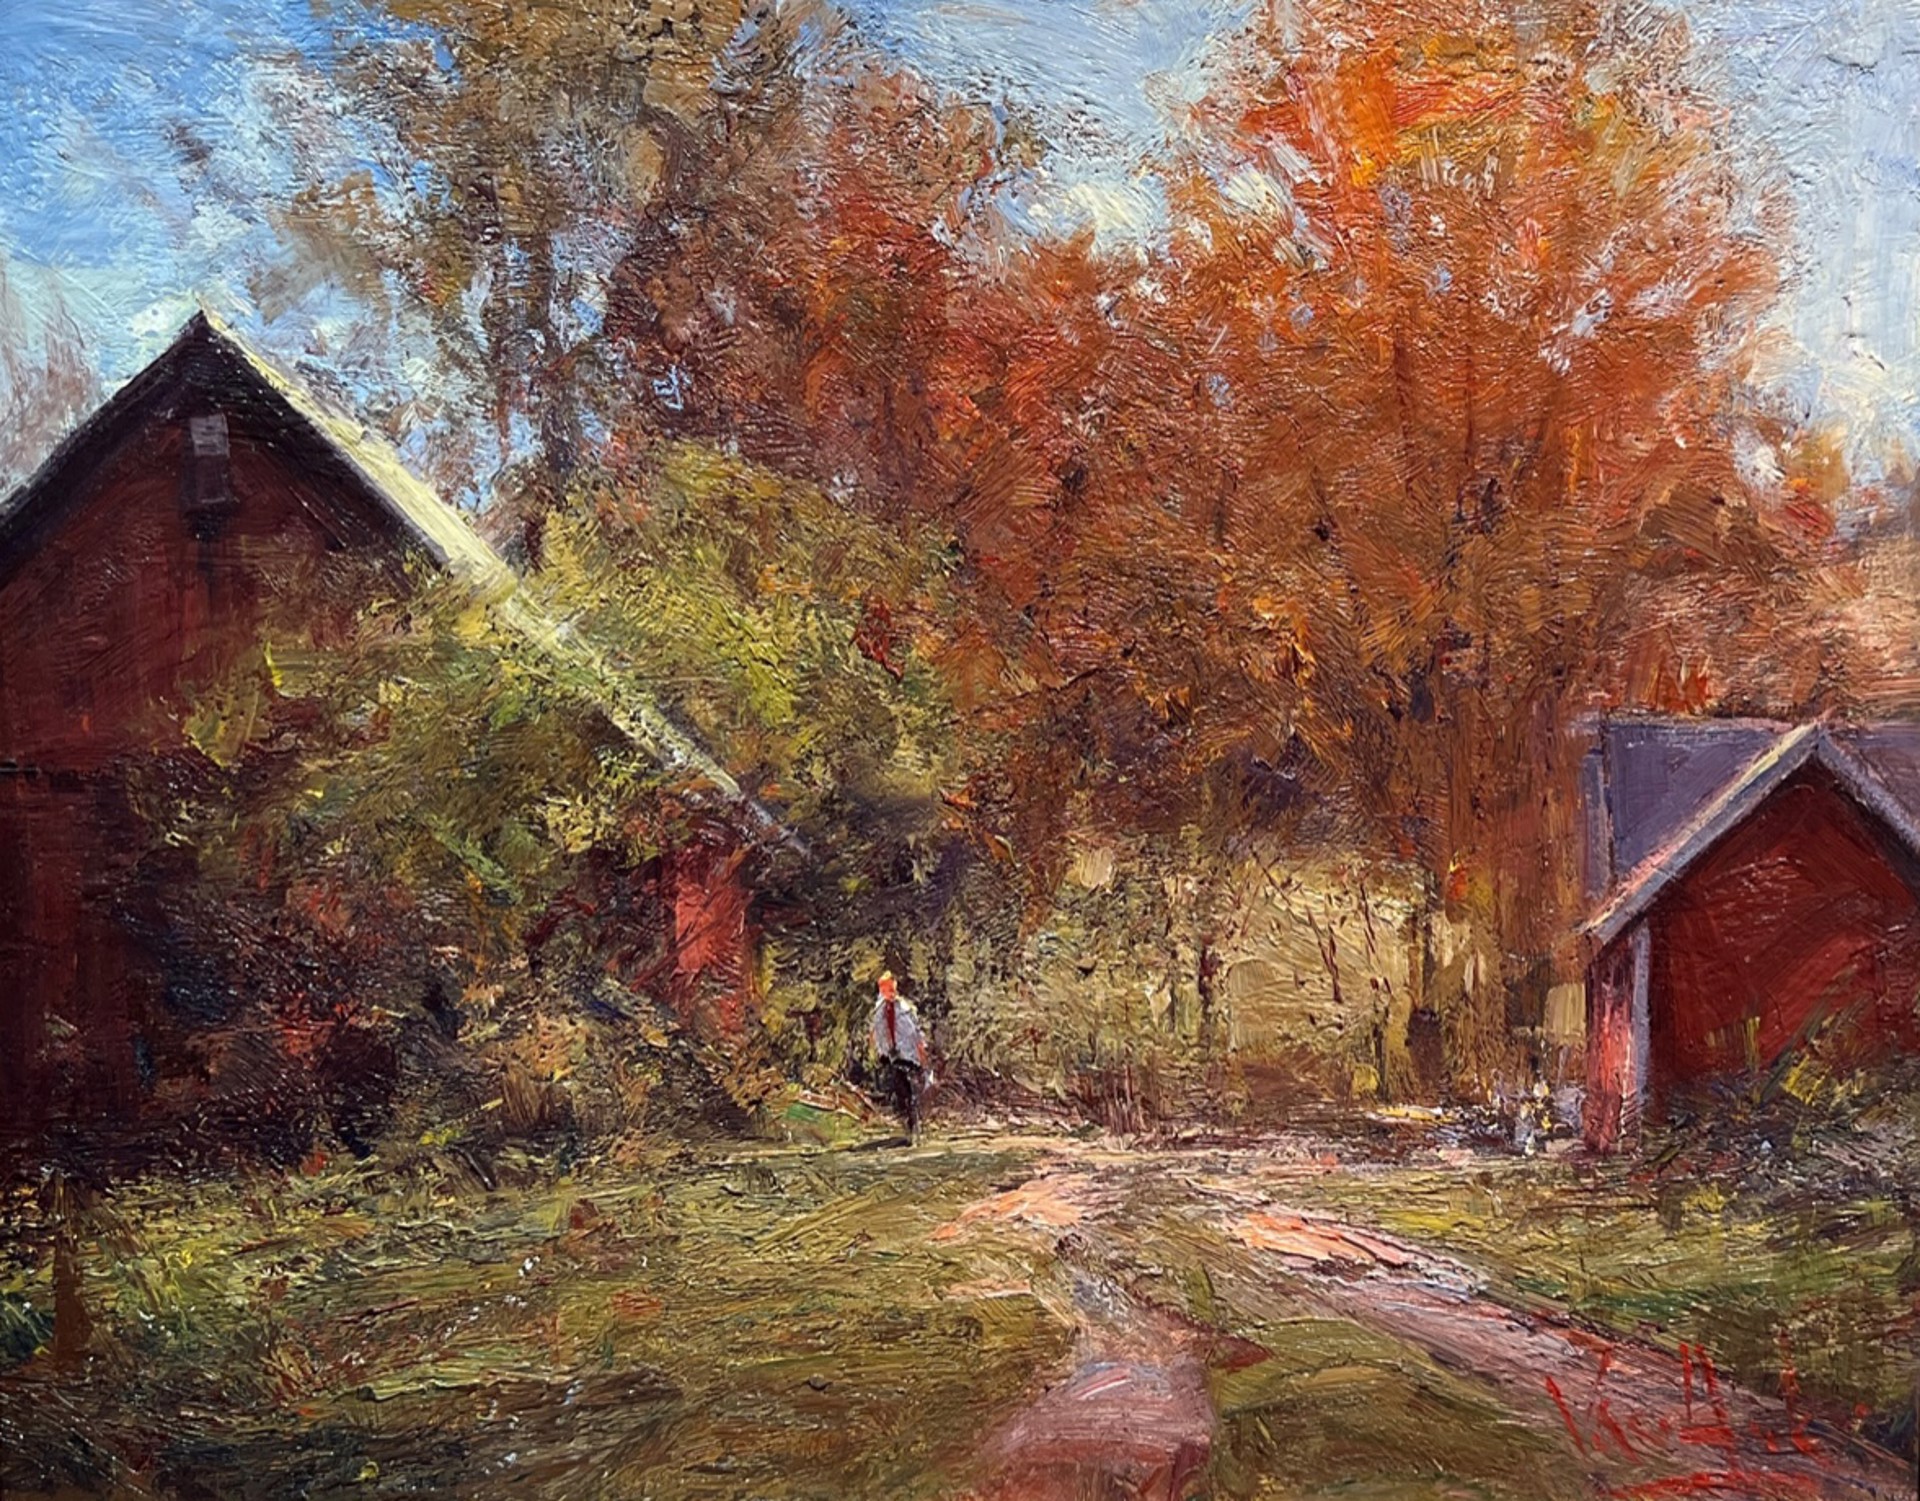 Red Barns in Autumn by George Van Hook